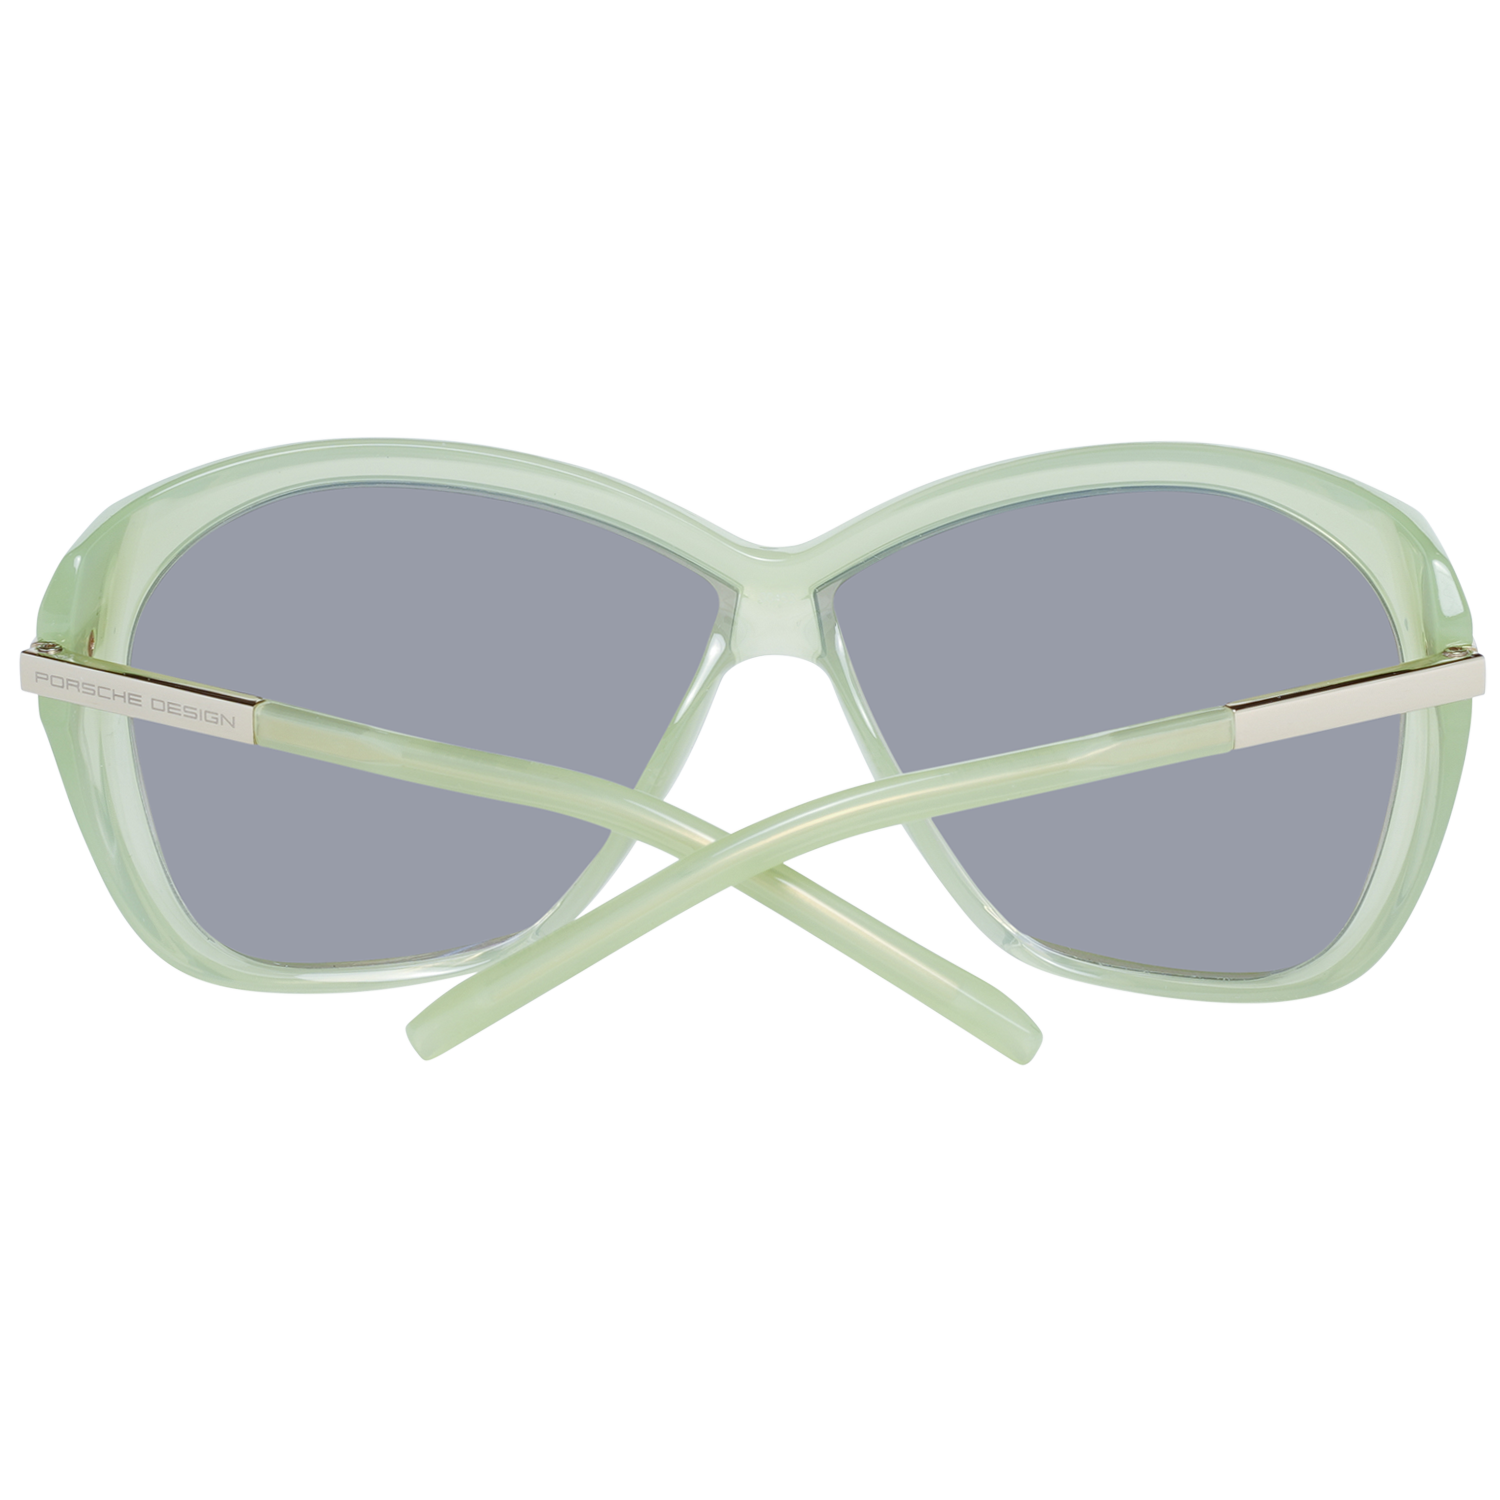 Porsche Design Sunglasses Porsche Design Sunglasses P8603 B 66mm Eyeglasses Eyewear UK USA Australia 